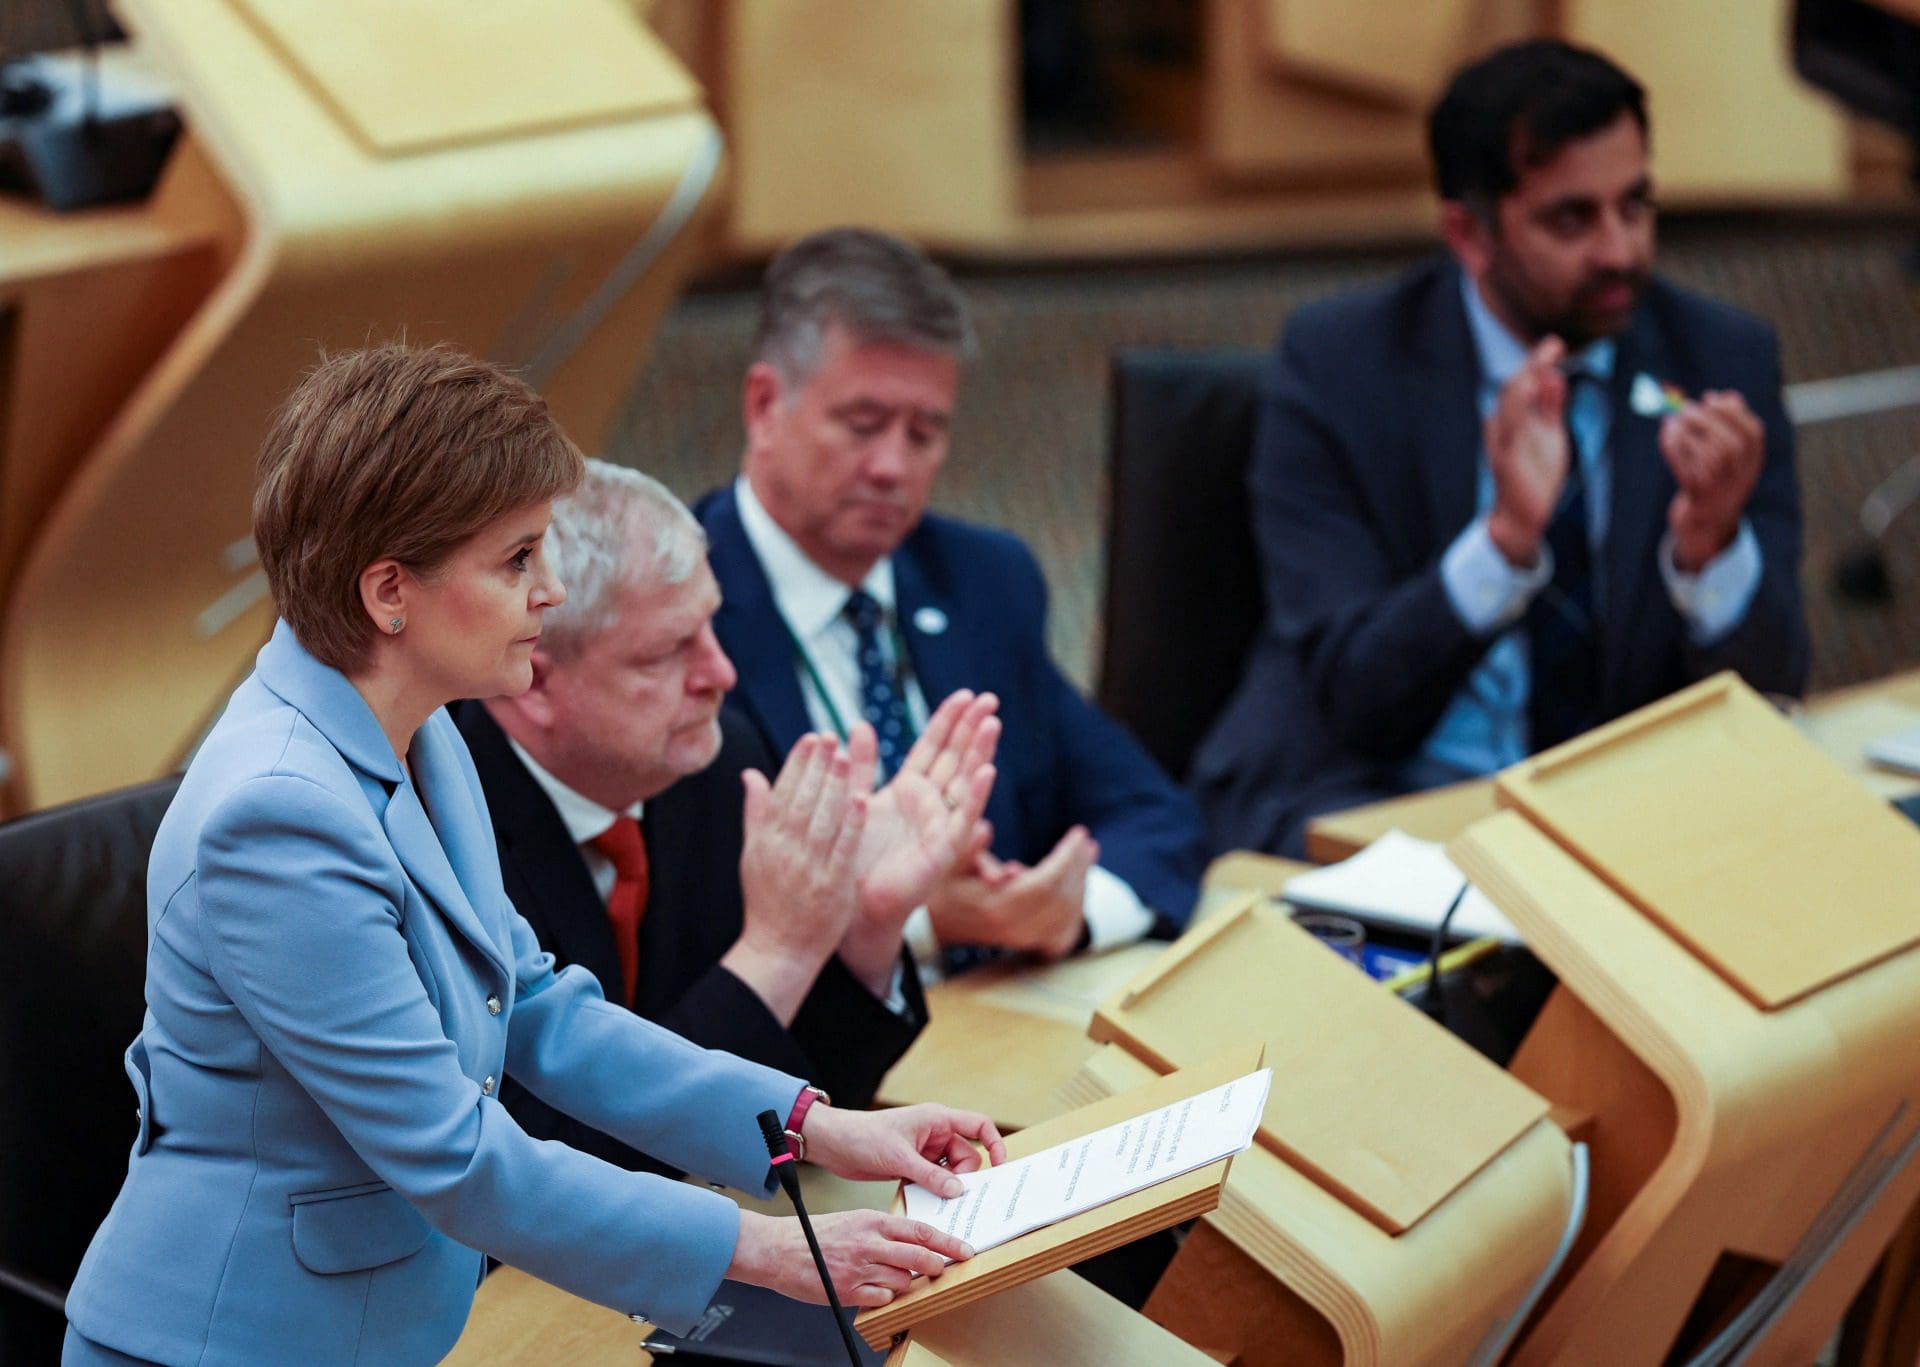 Escócia quer avançar para referendo sobre independência